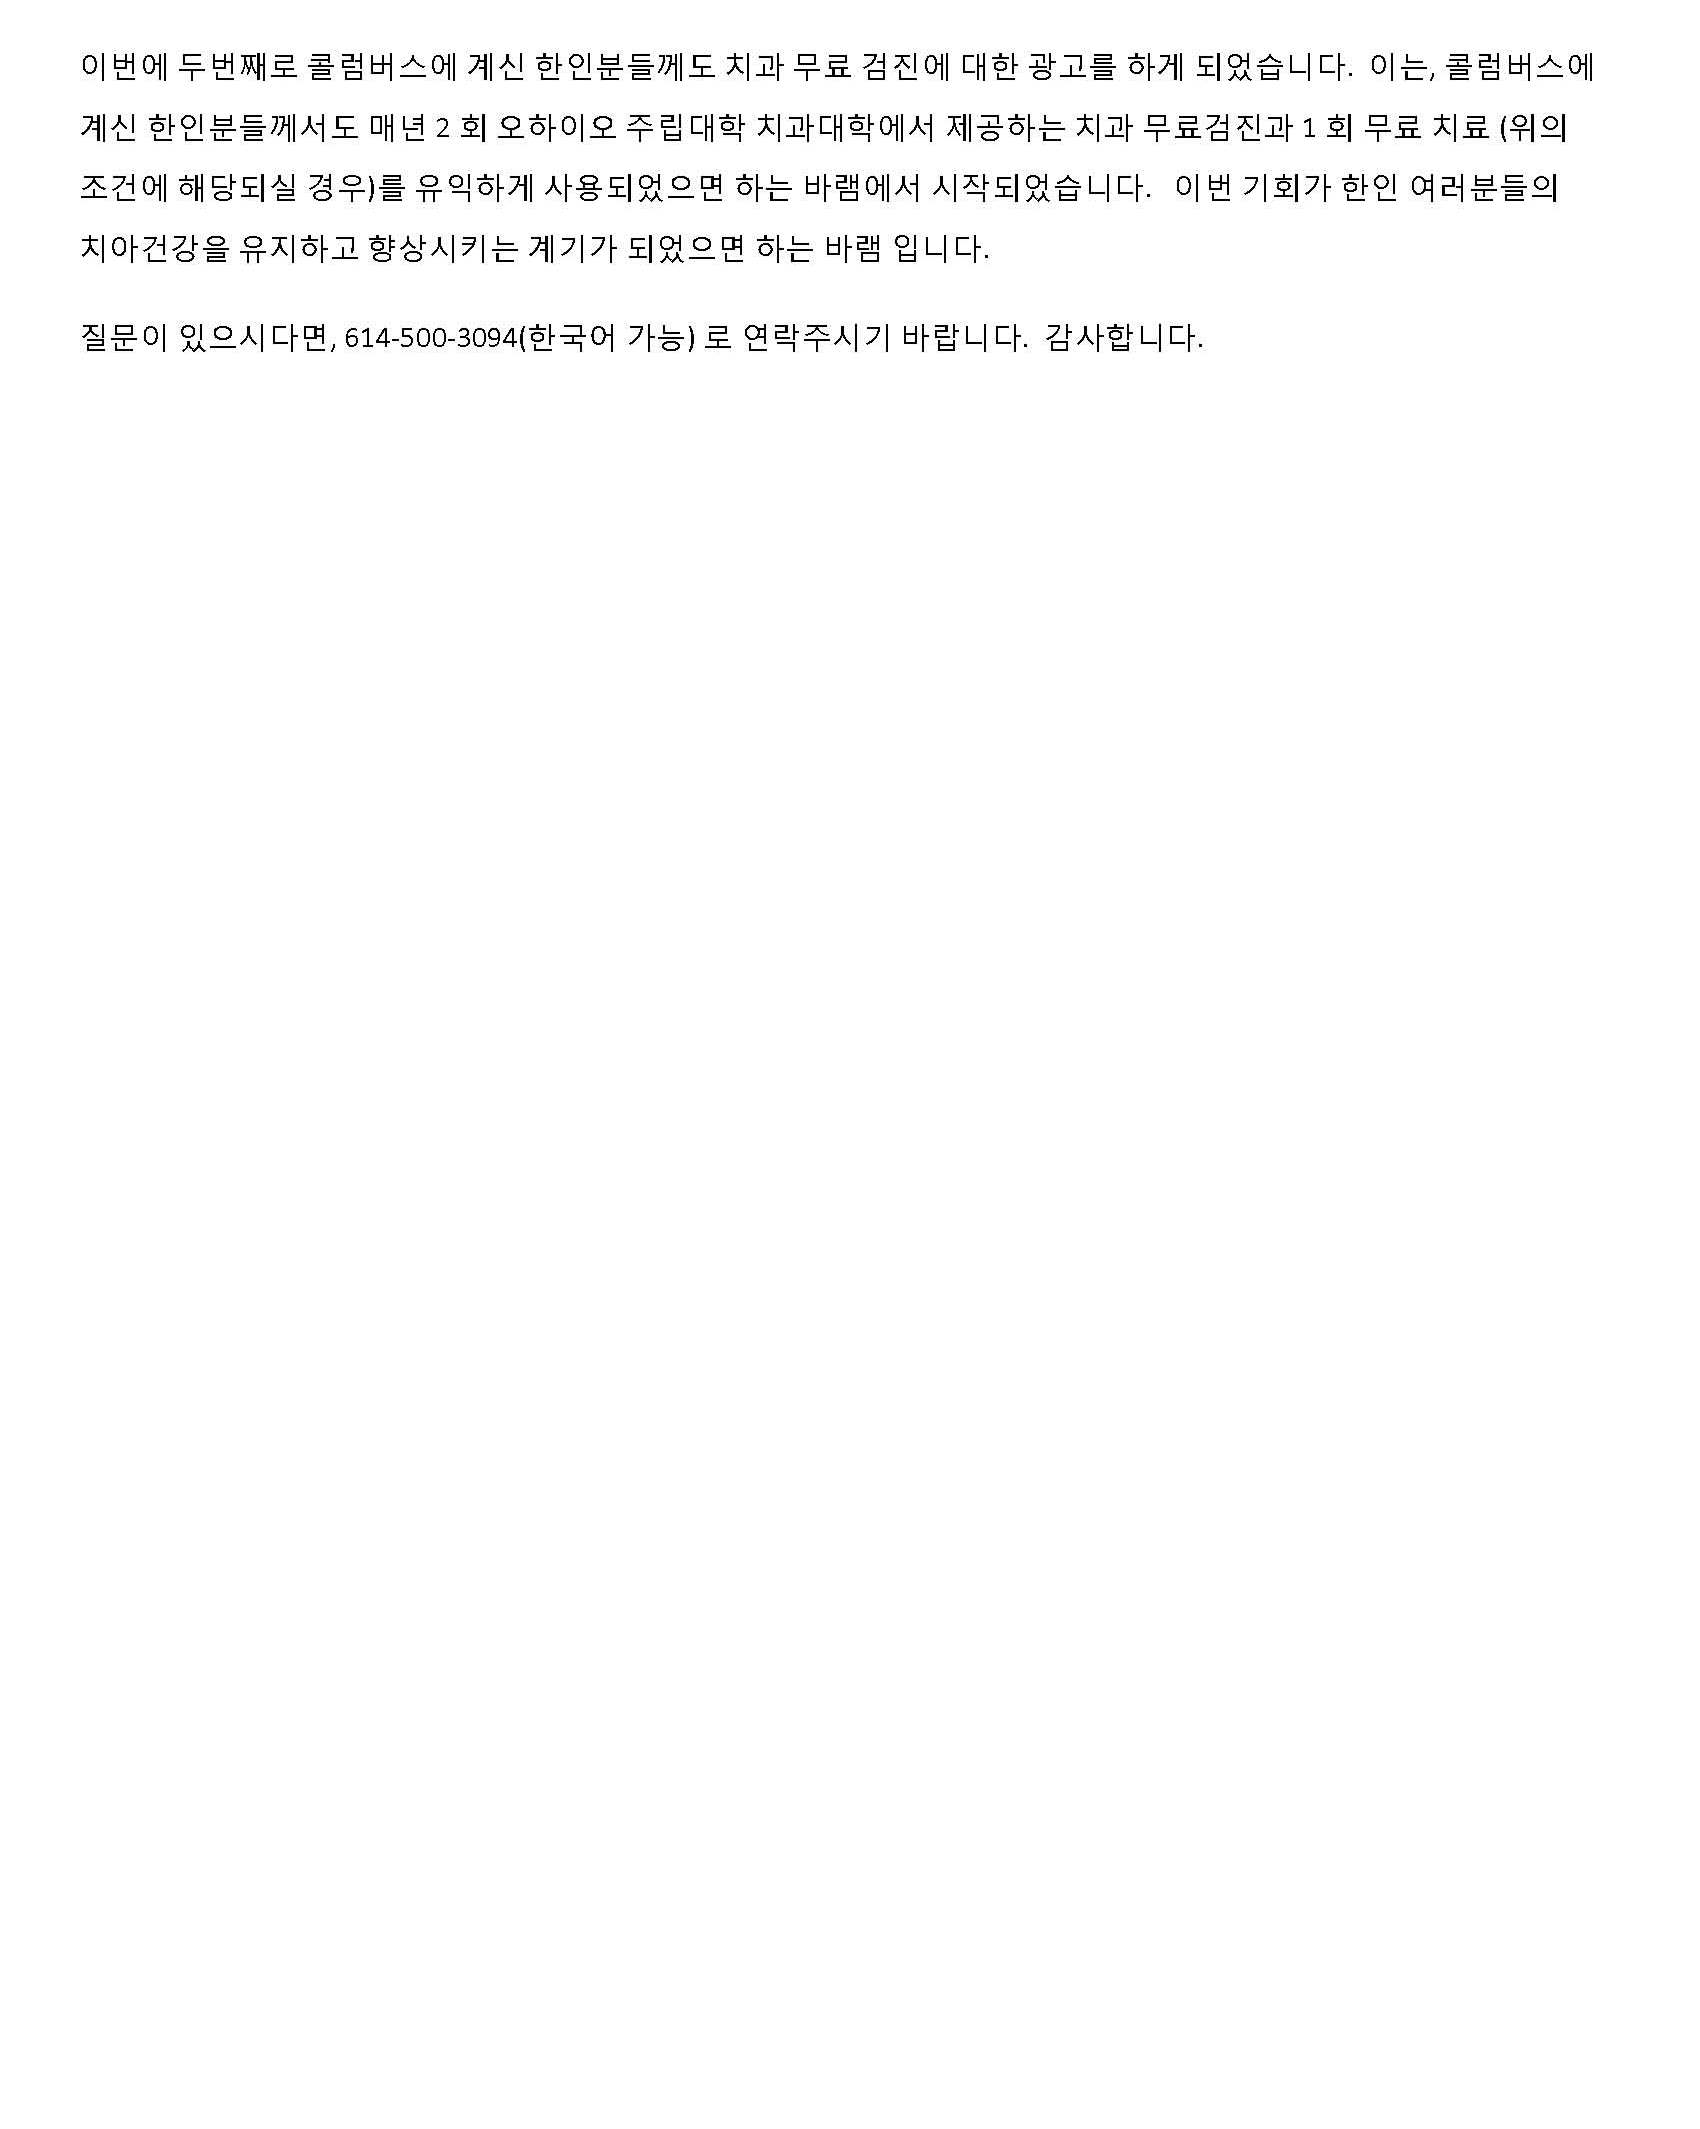 handout to patient-korean_페이지_3.jpg